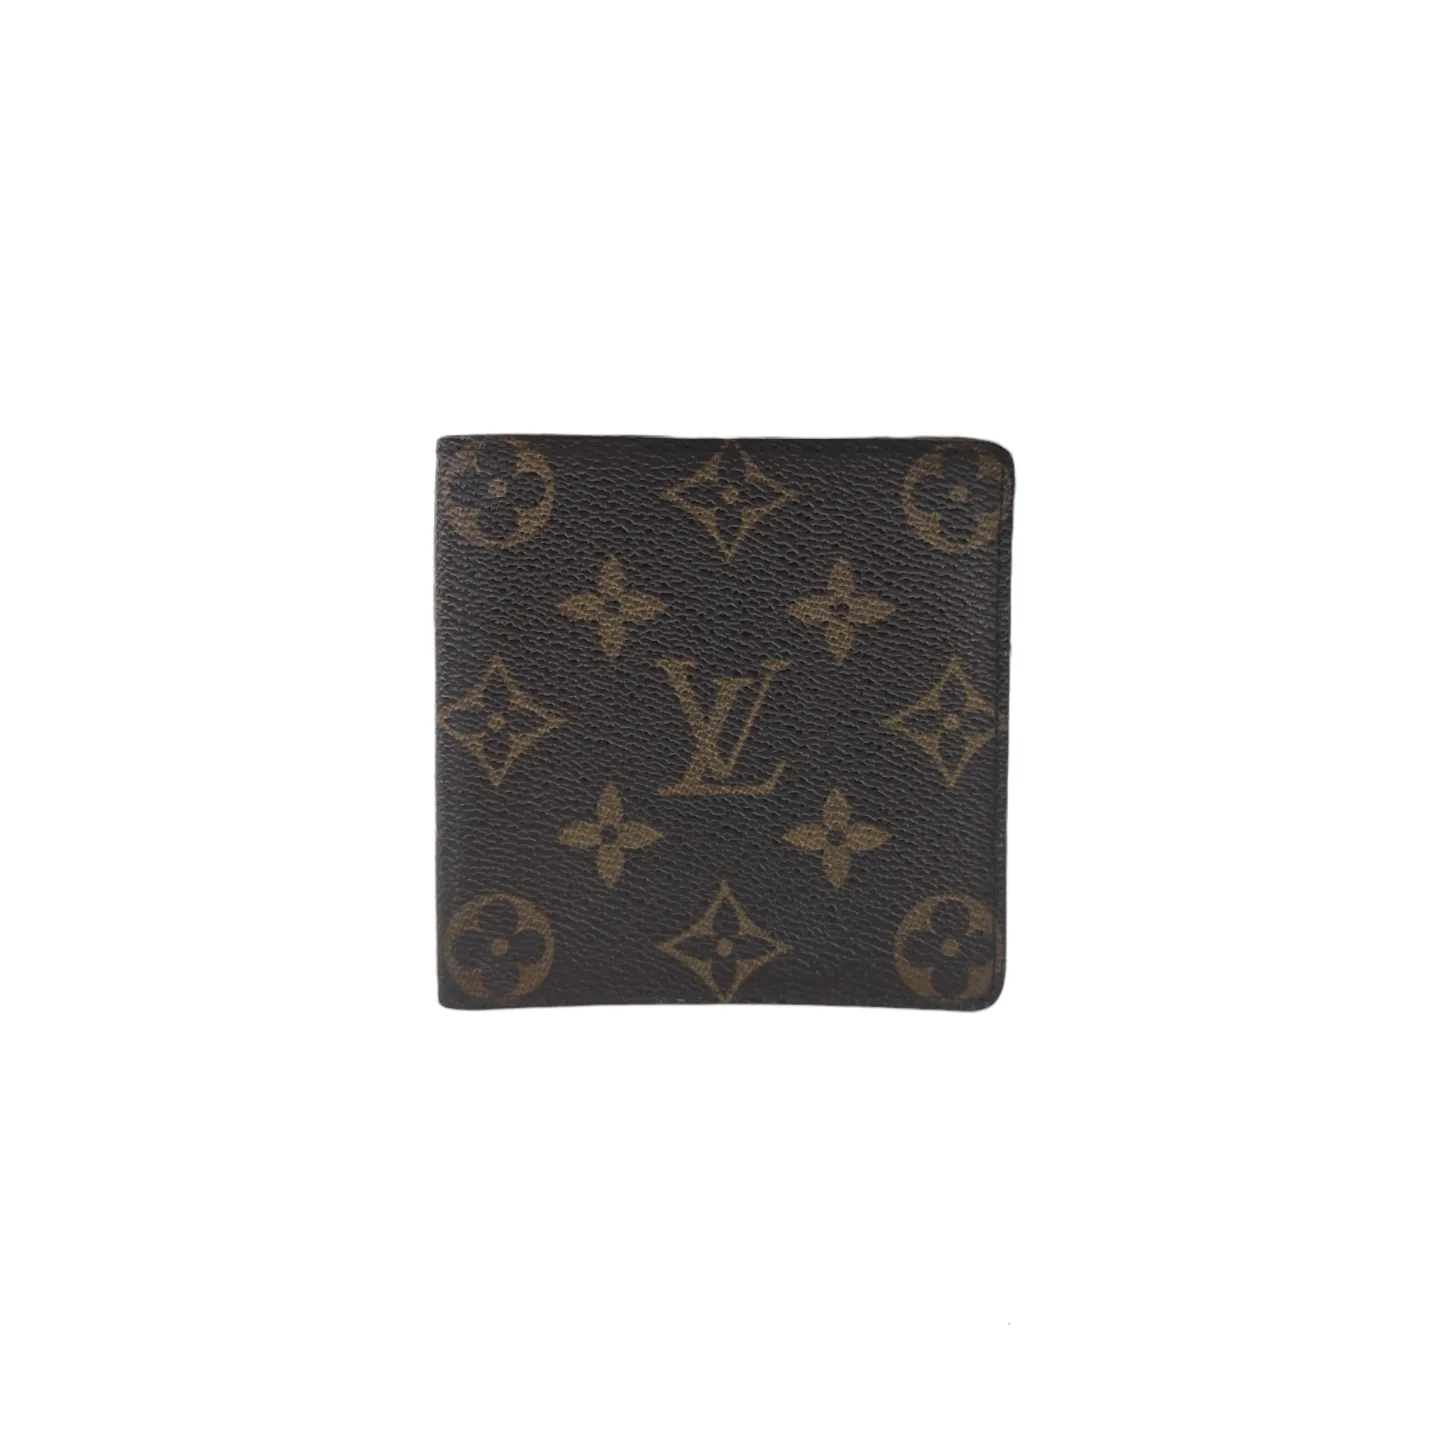 Portafogli Louis Vuitton Insolite in tela cerata con motivo a scacchi